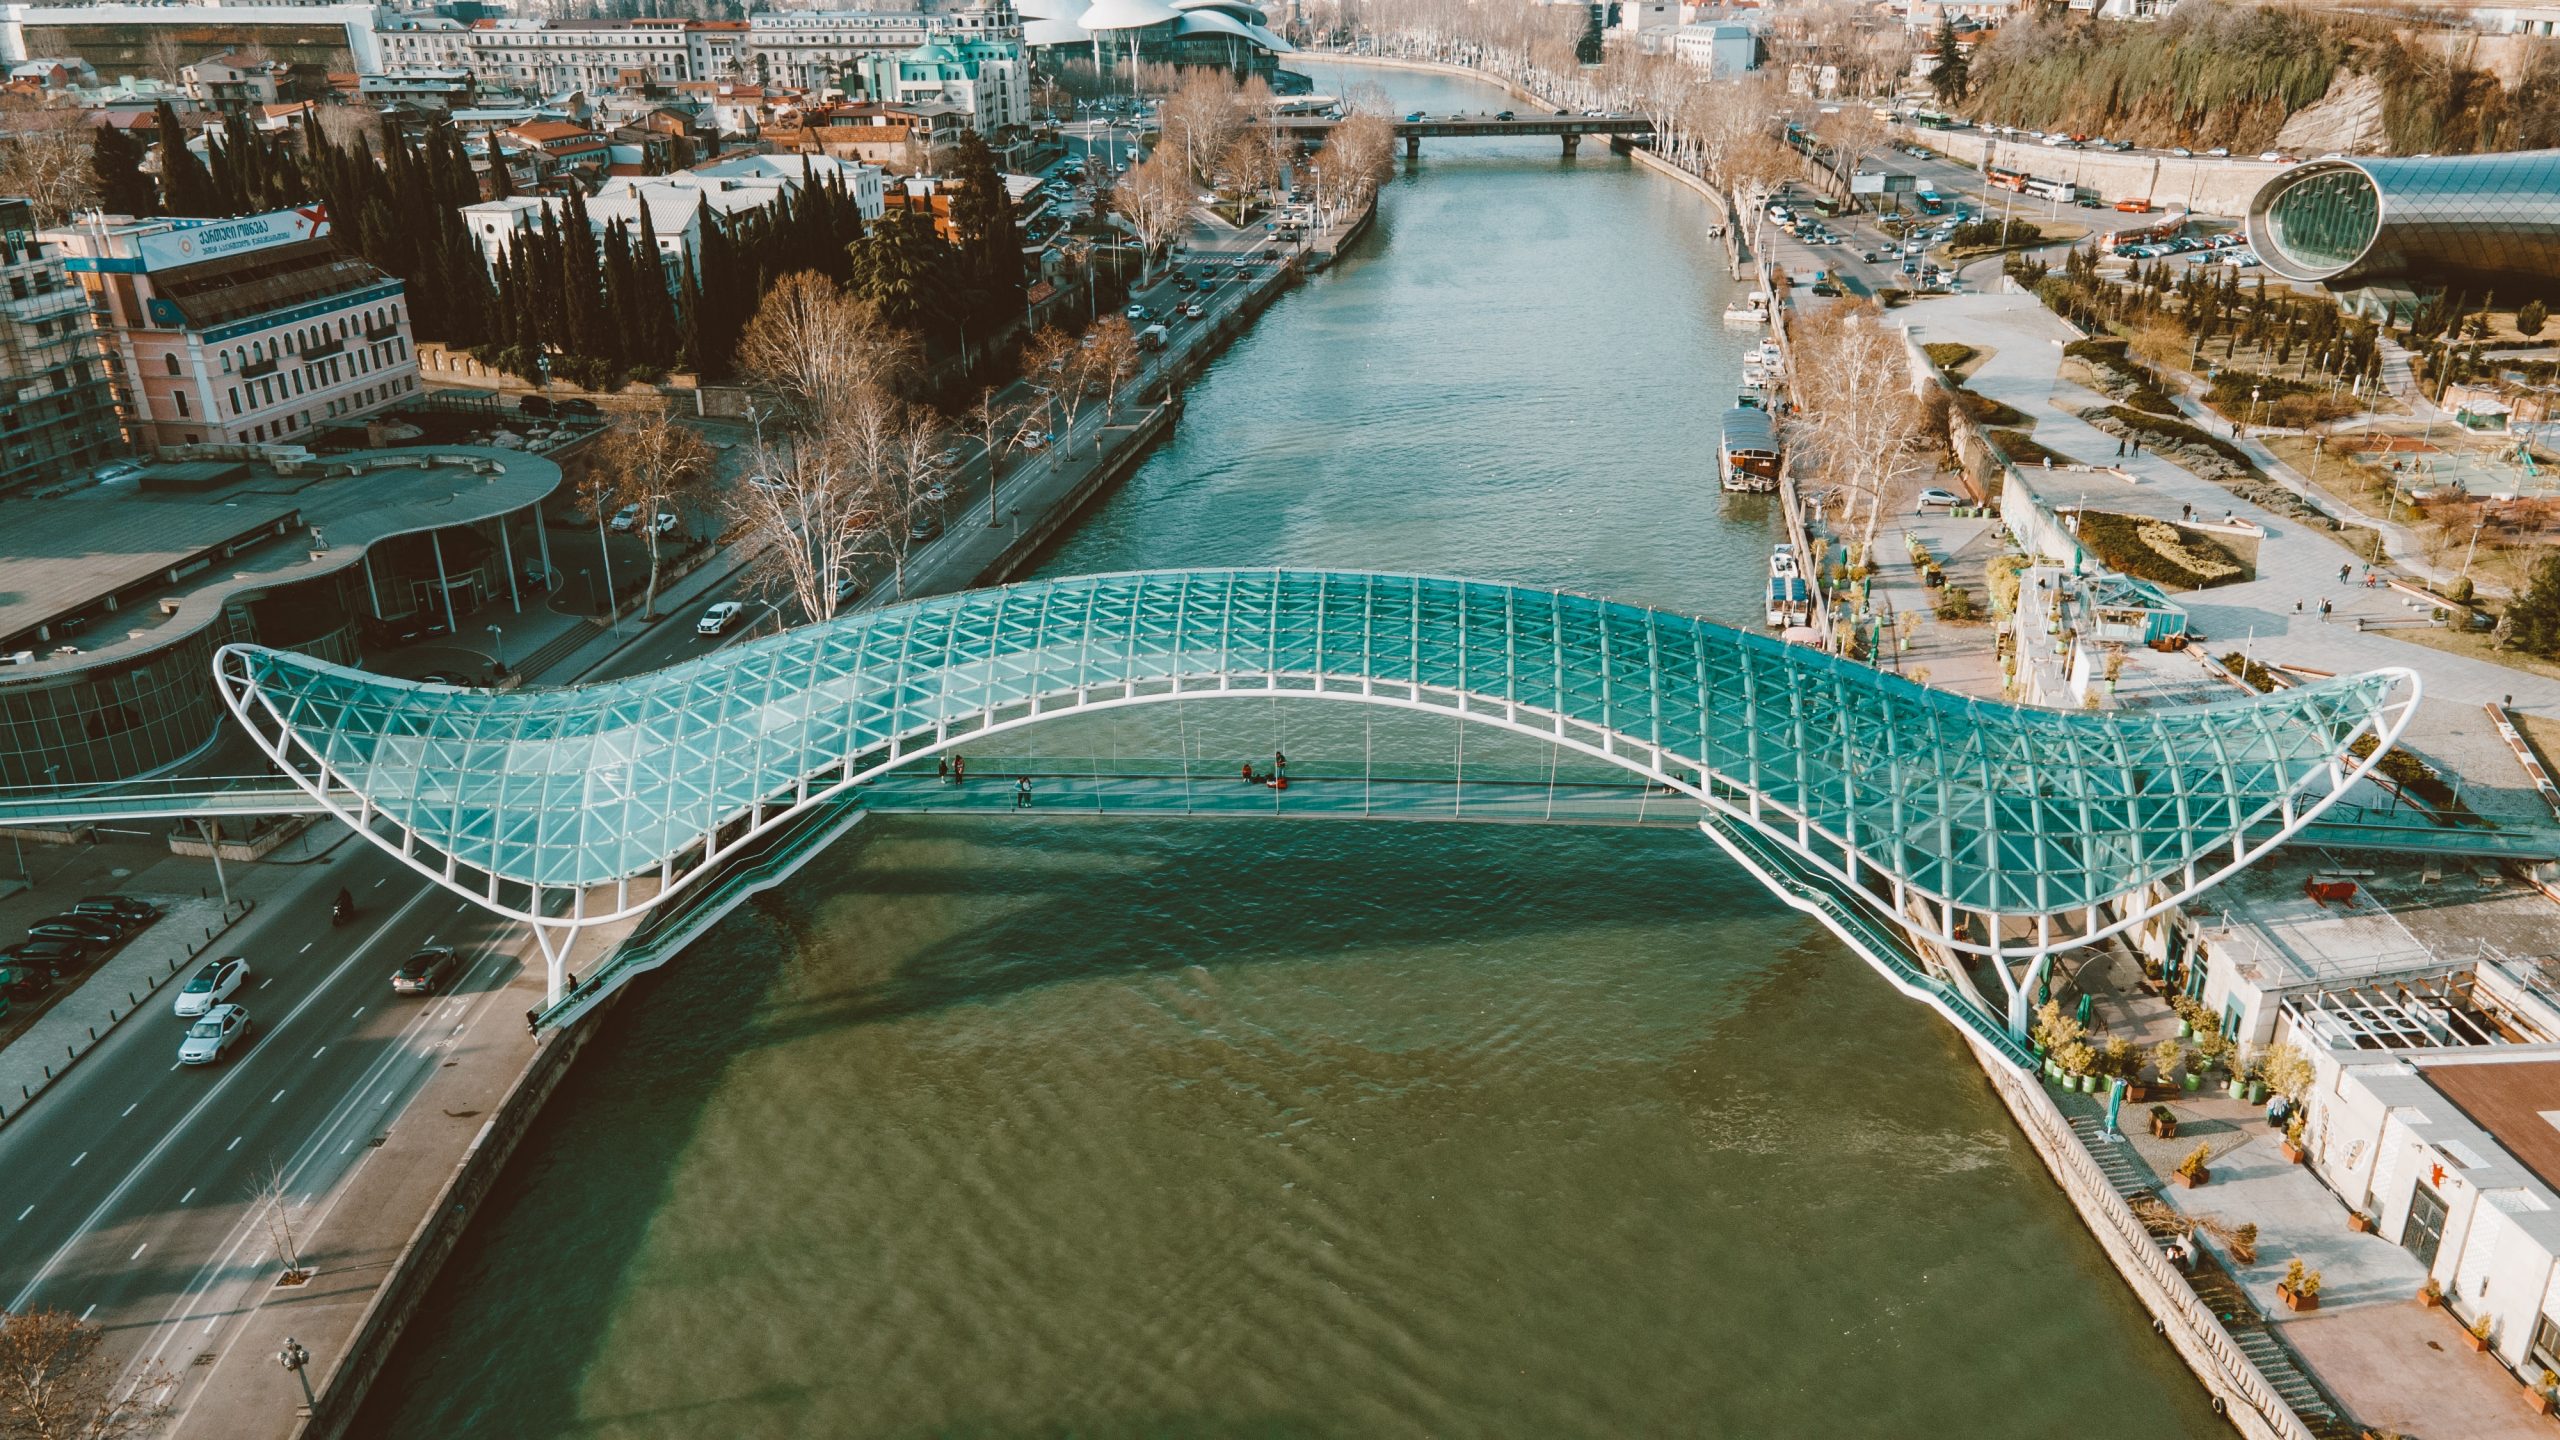 Aeriel Shot of a Bridge in a City